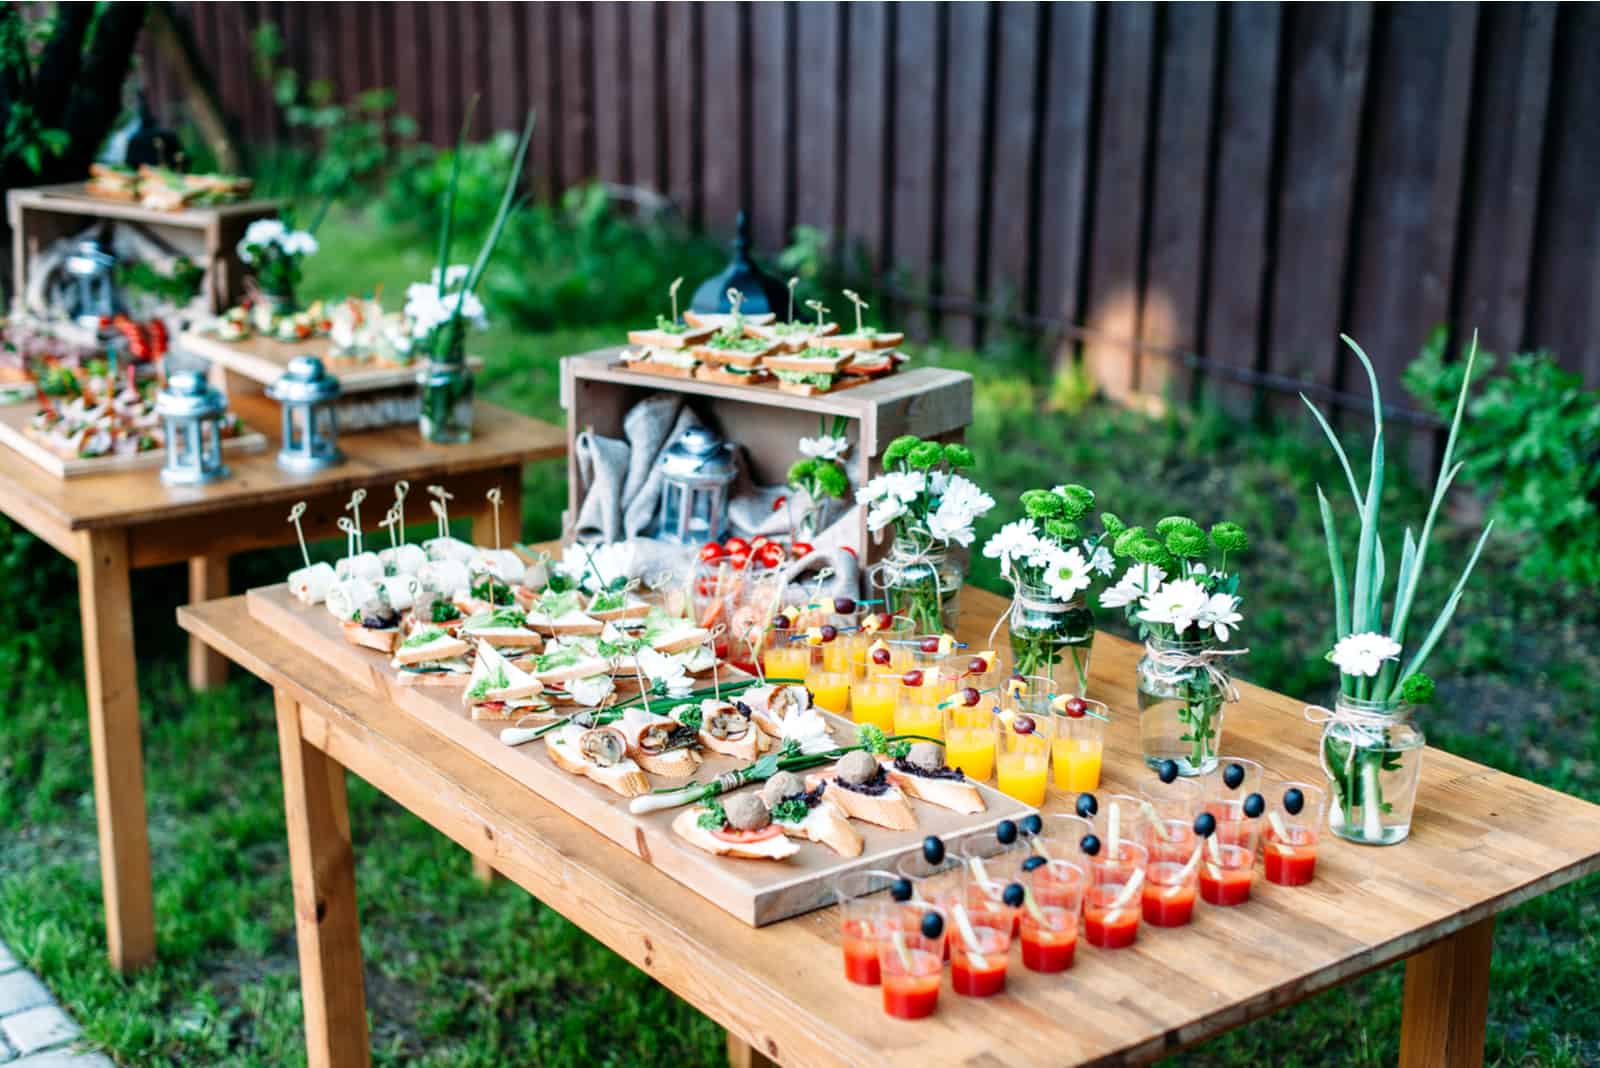 schön dekorierte Speisen und Getränke auf den Tischen im Garten